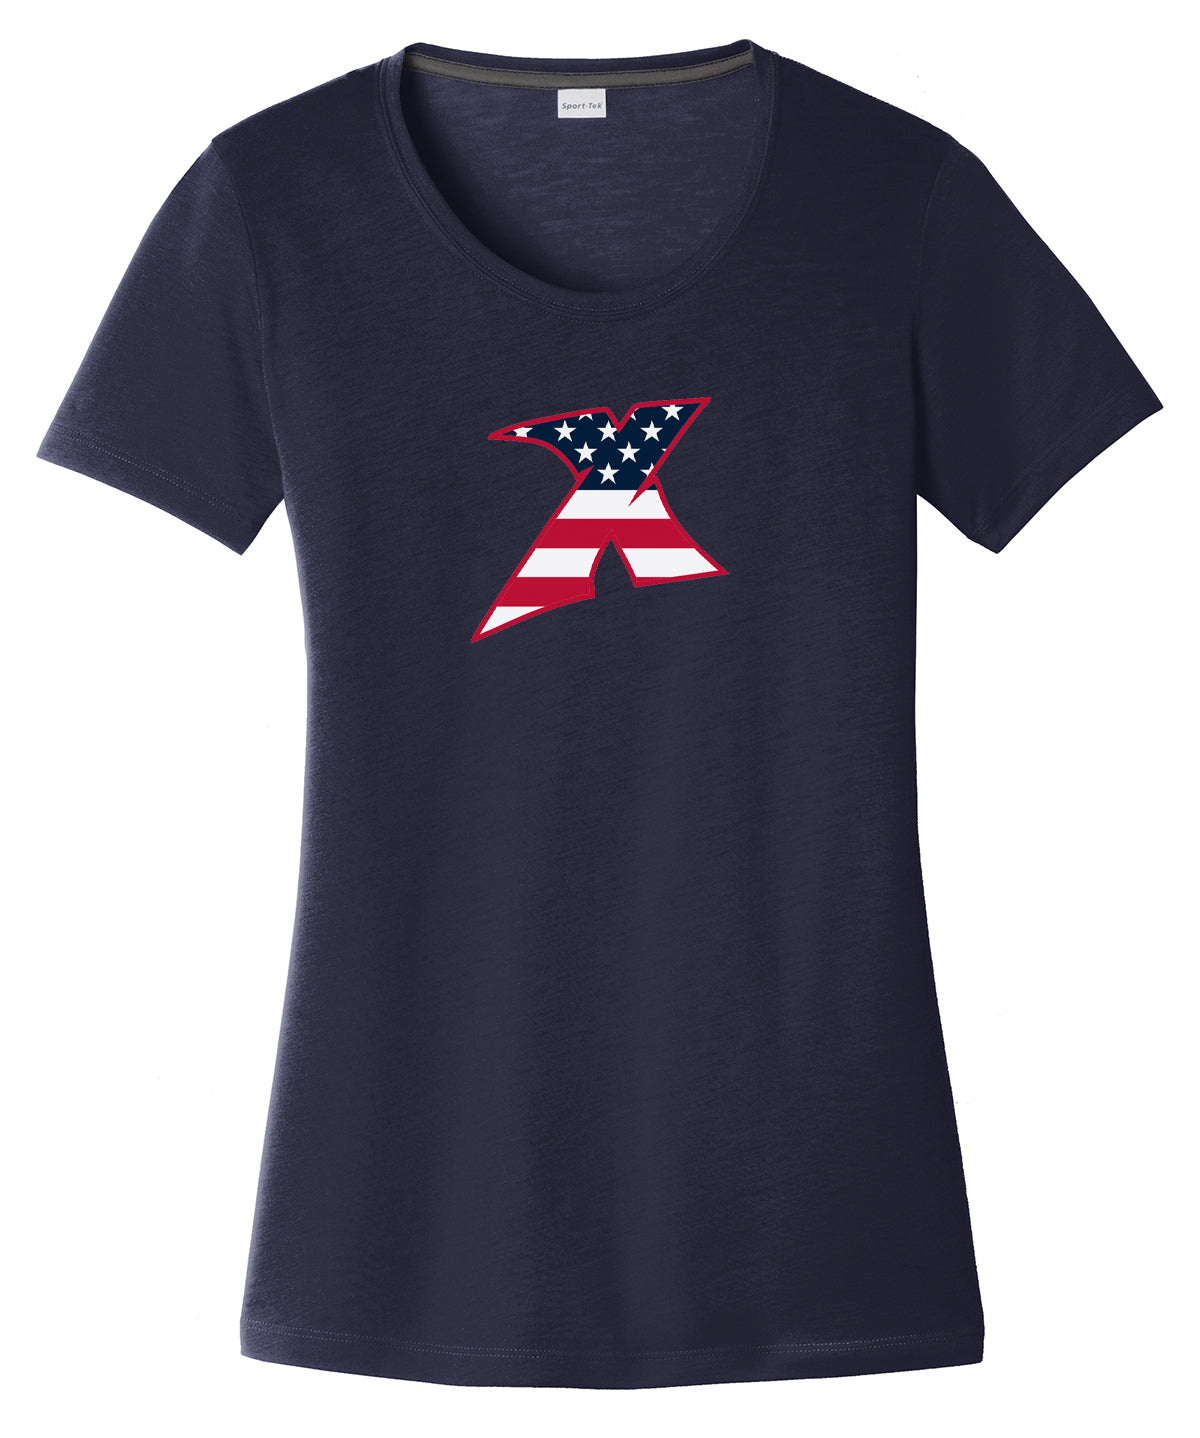 MDX Navy Women's CottonTouch Performance T-Shirt